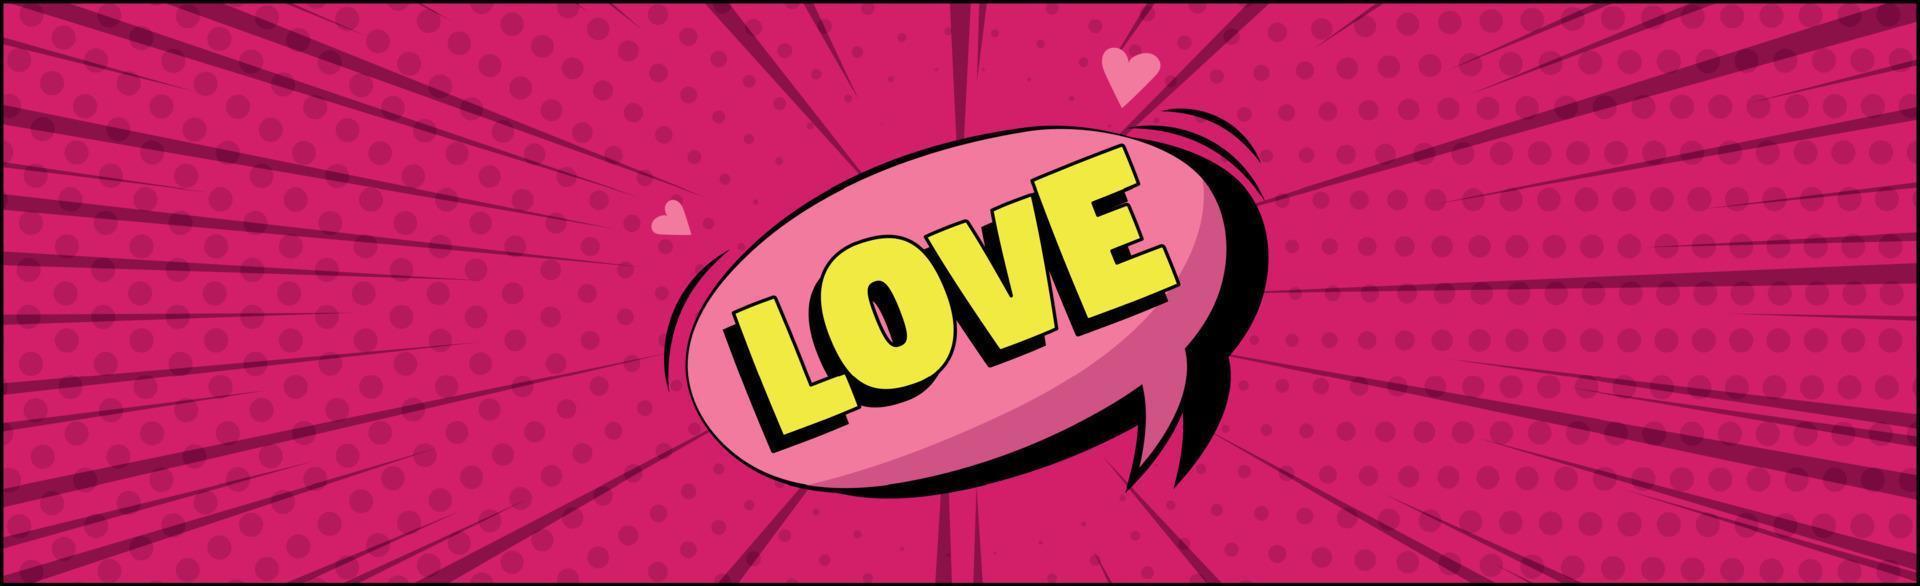 inscrição de zoom em quadrinhos amor em um fundo colorido - vetor